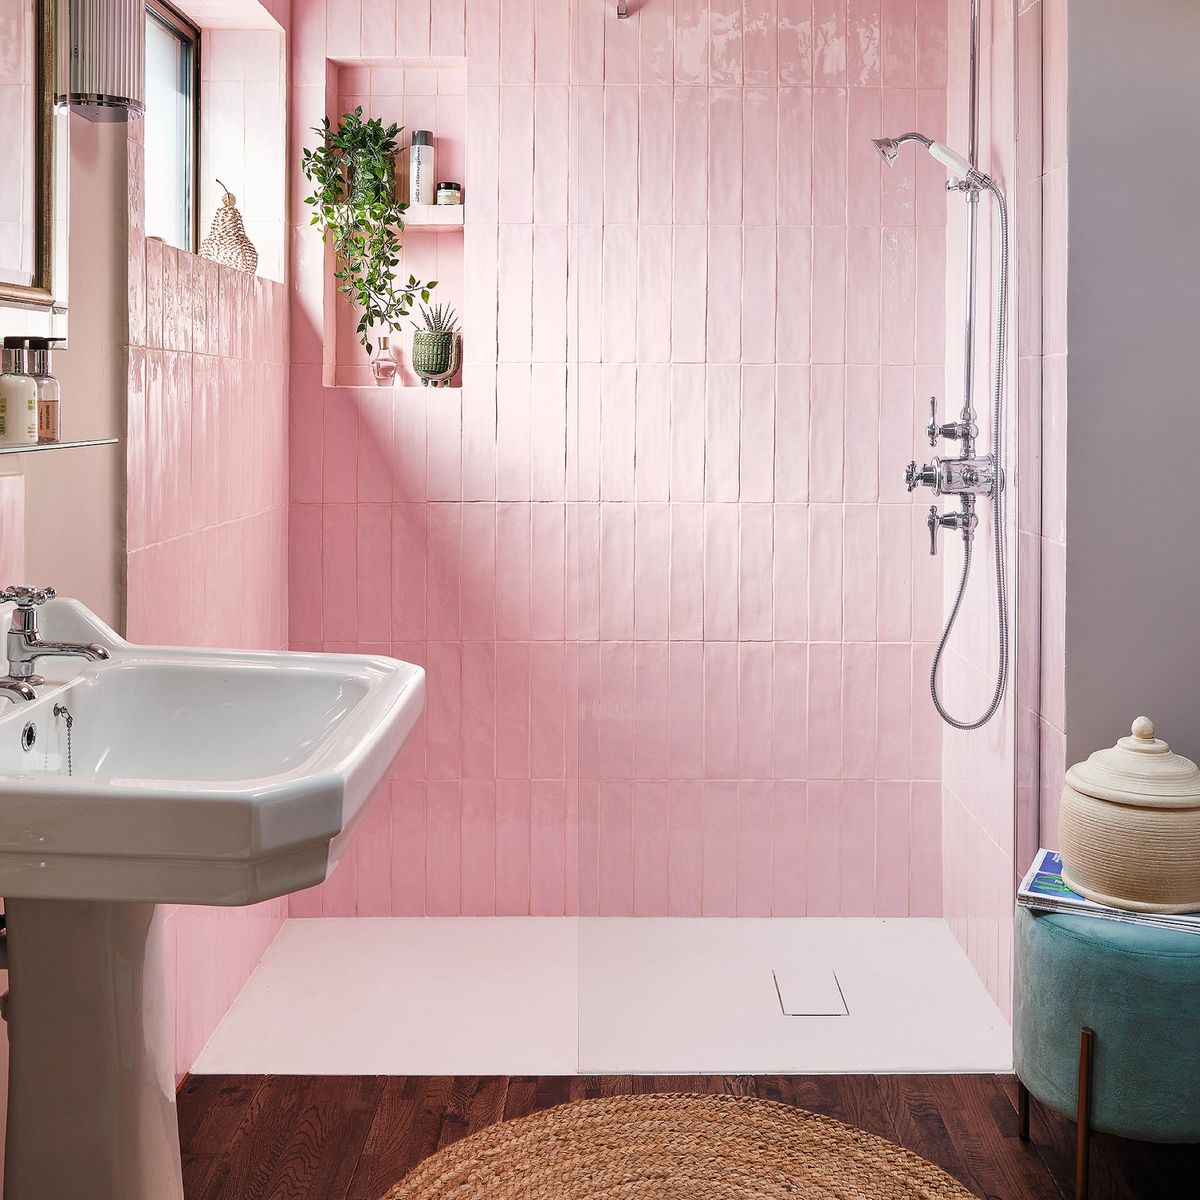 Lush Decor Navy Bathroom Shower Curtain with Bold Trellis Print on Navy